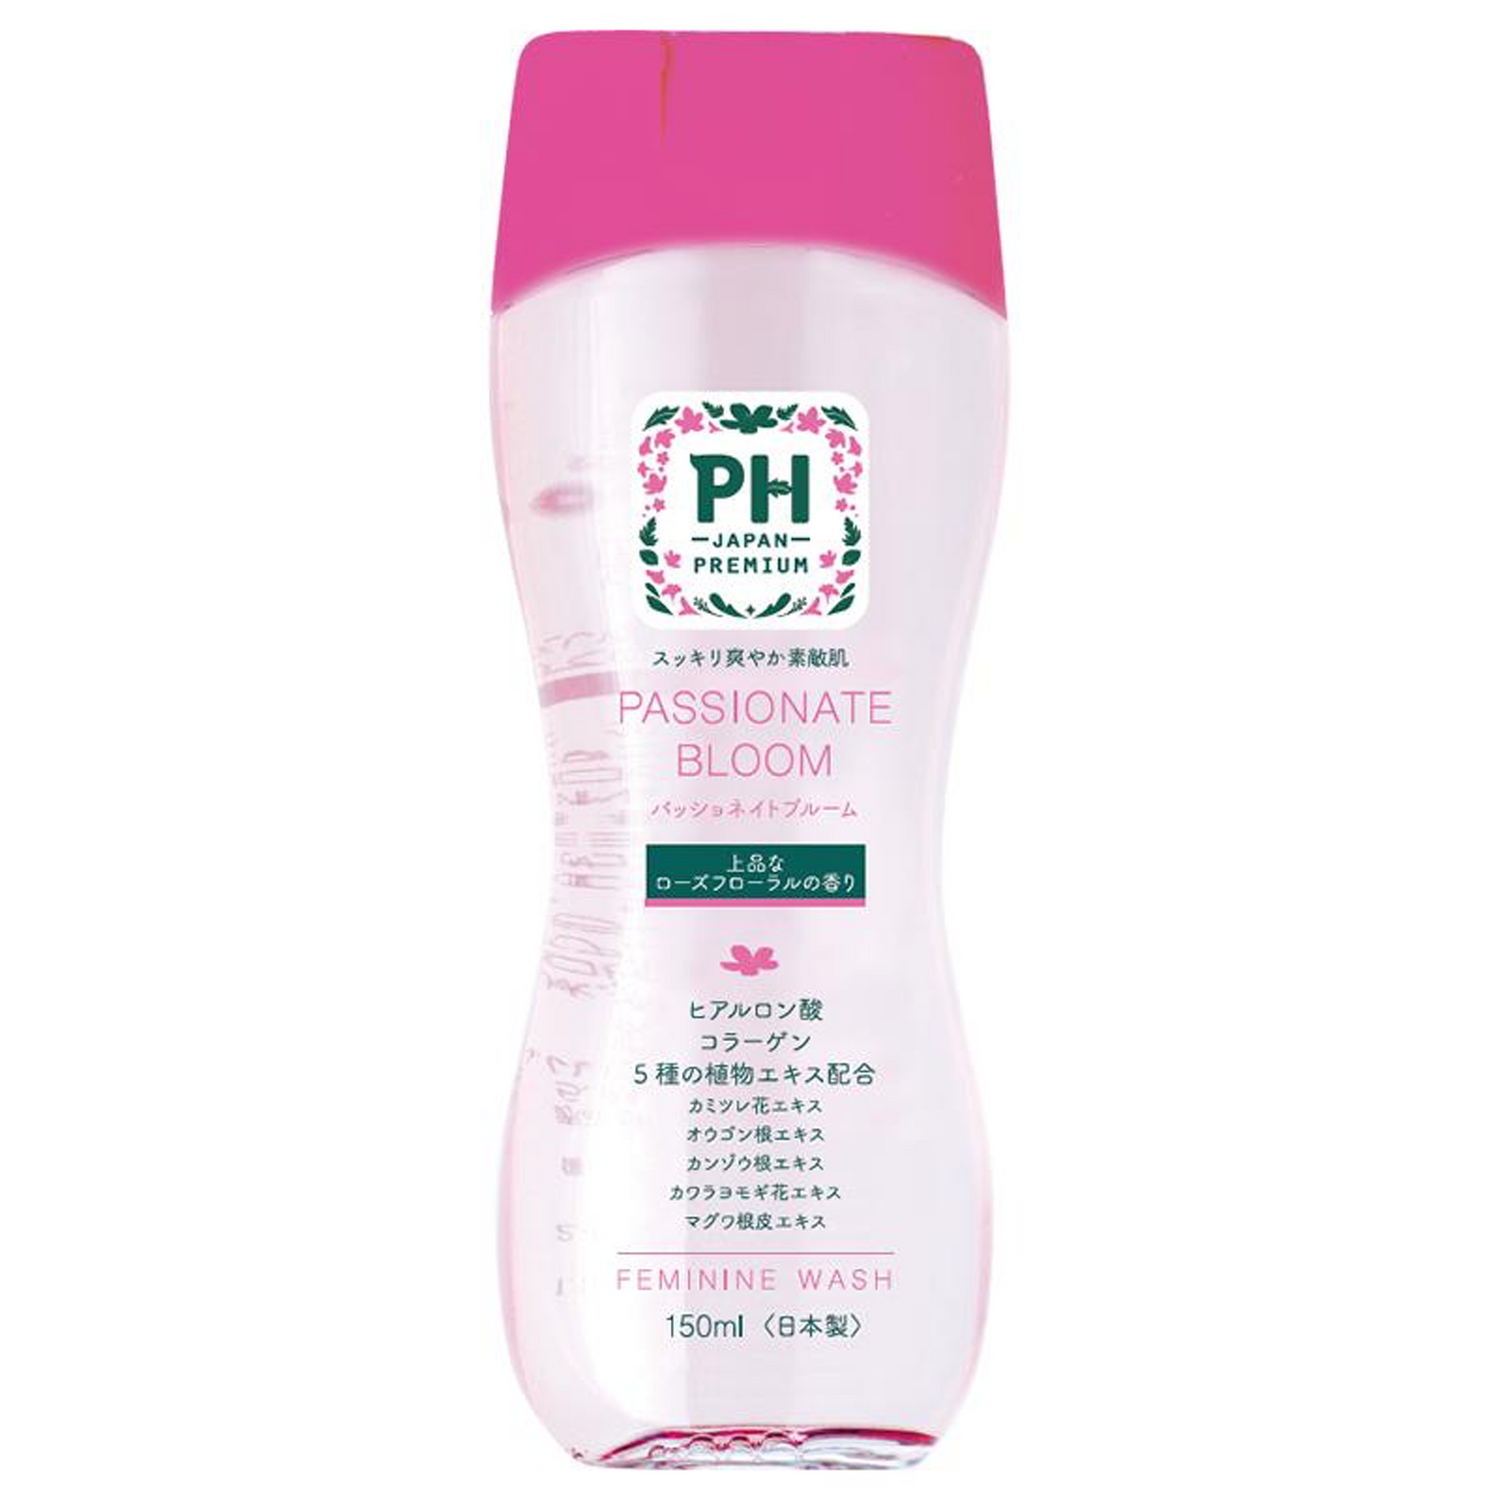 PH care Premium Feminine Wash 150ml